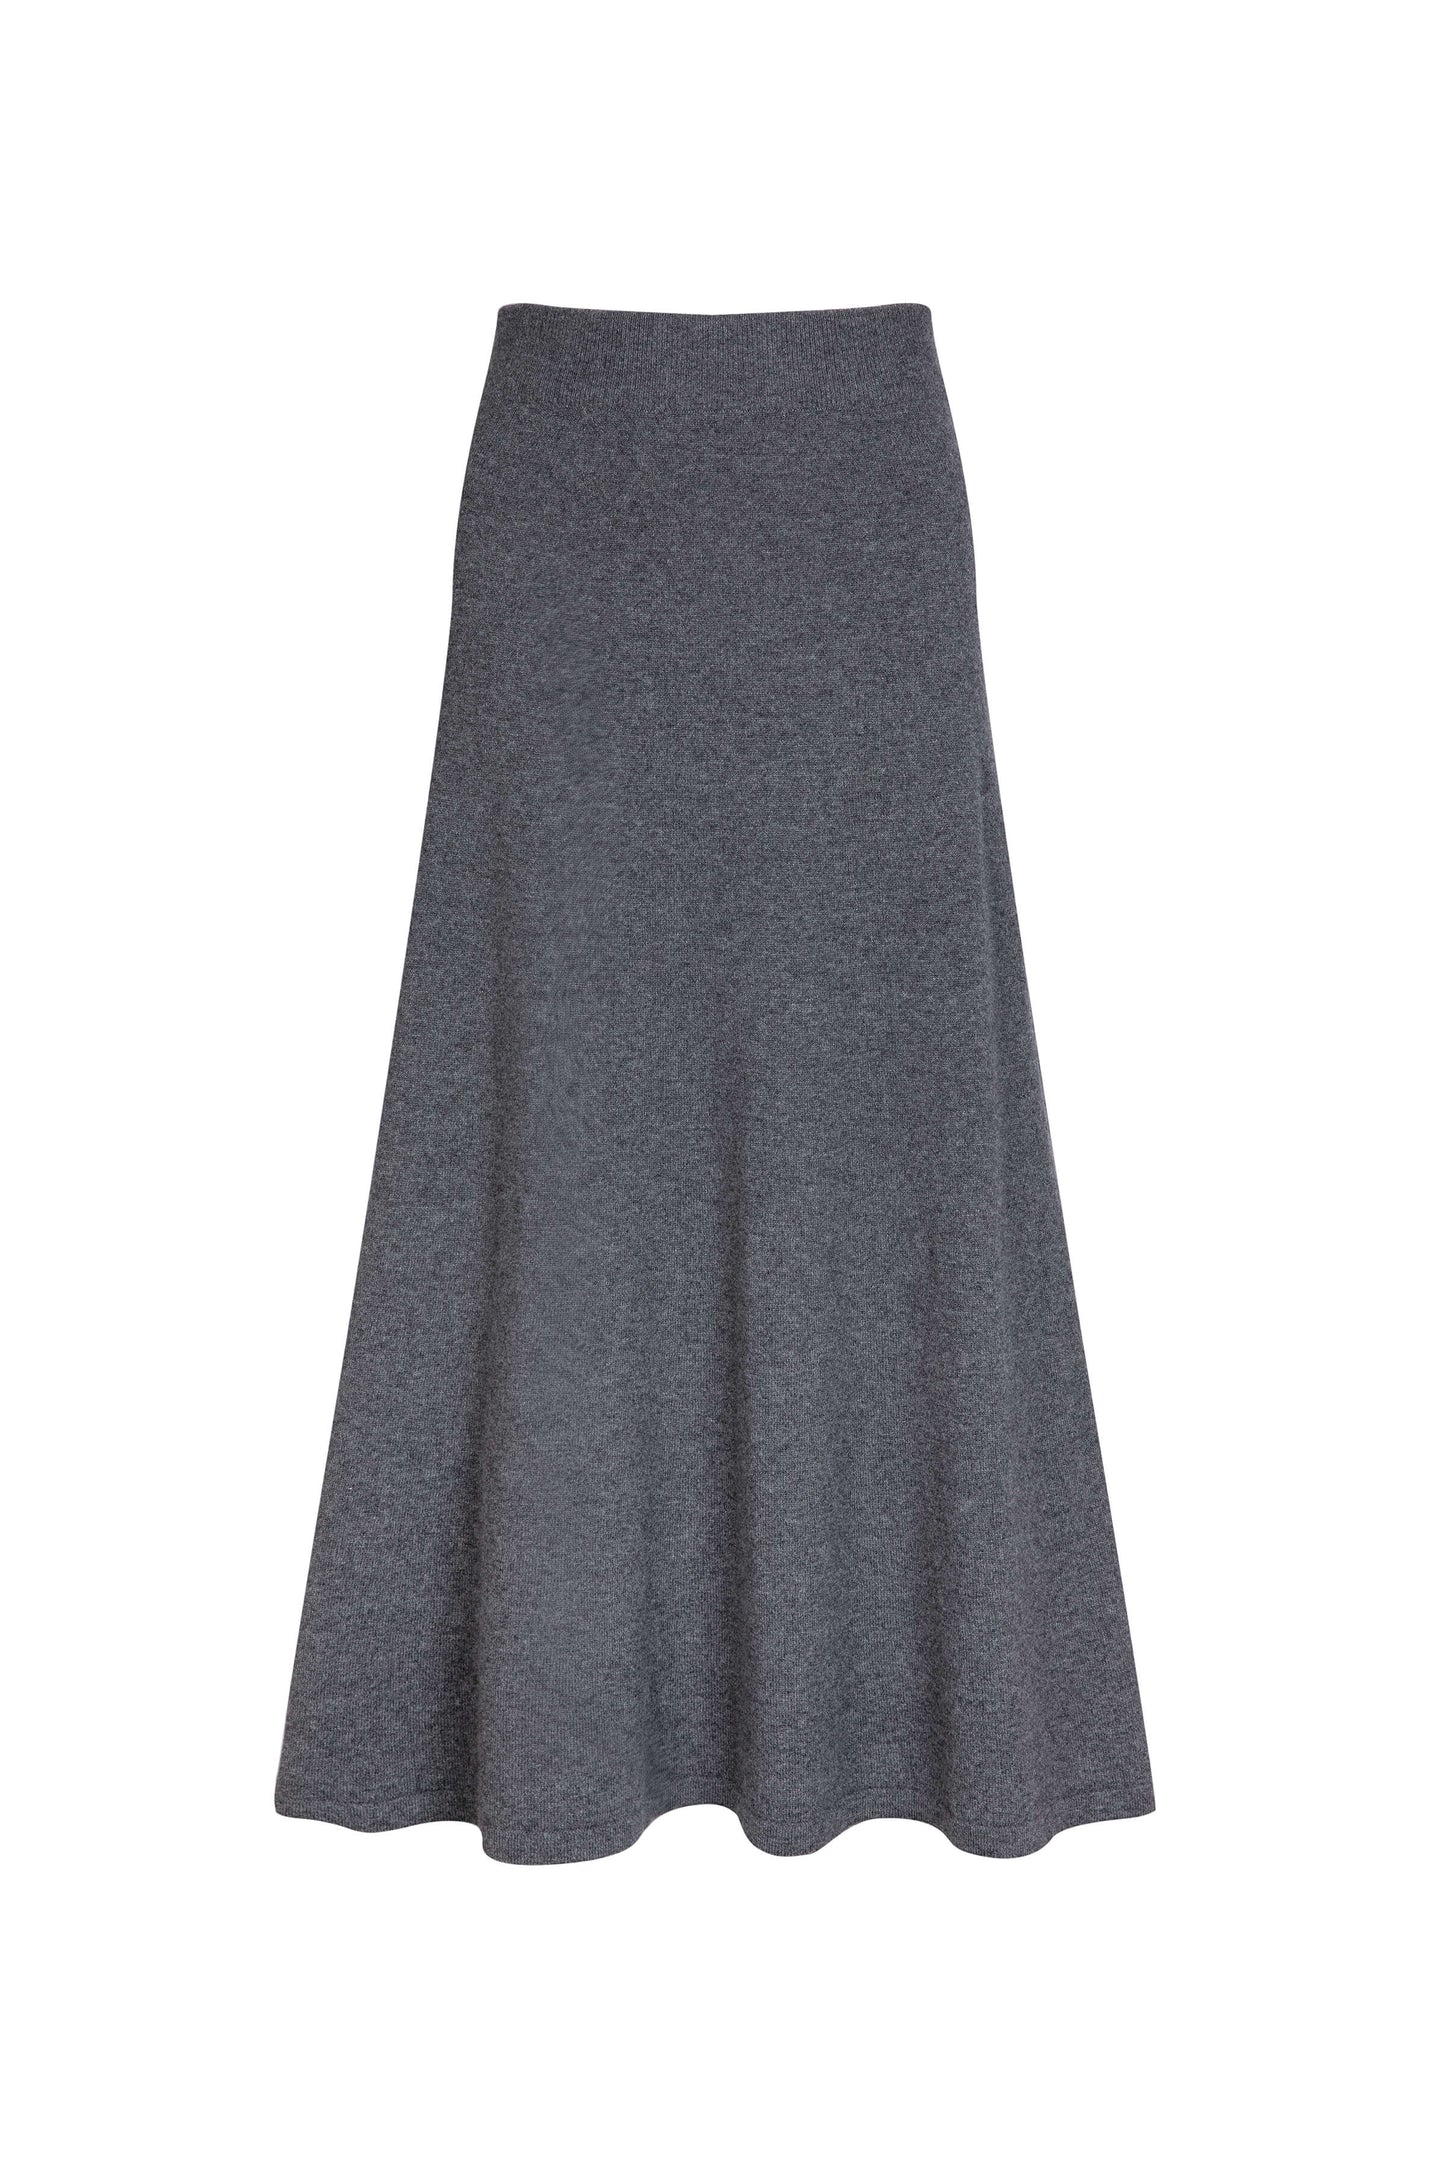 Johnstons of Elgin Women's A-Line Cashmere Skirt in Mid Grey  KAP05097HA4181